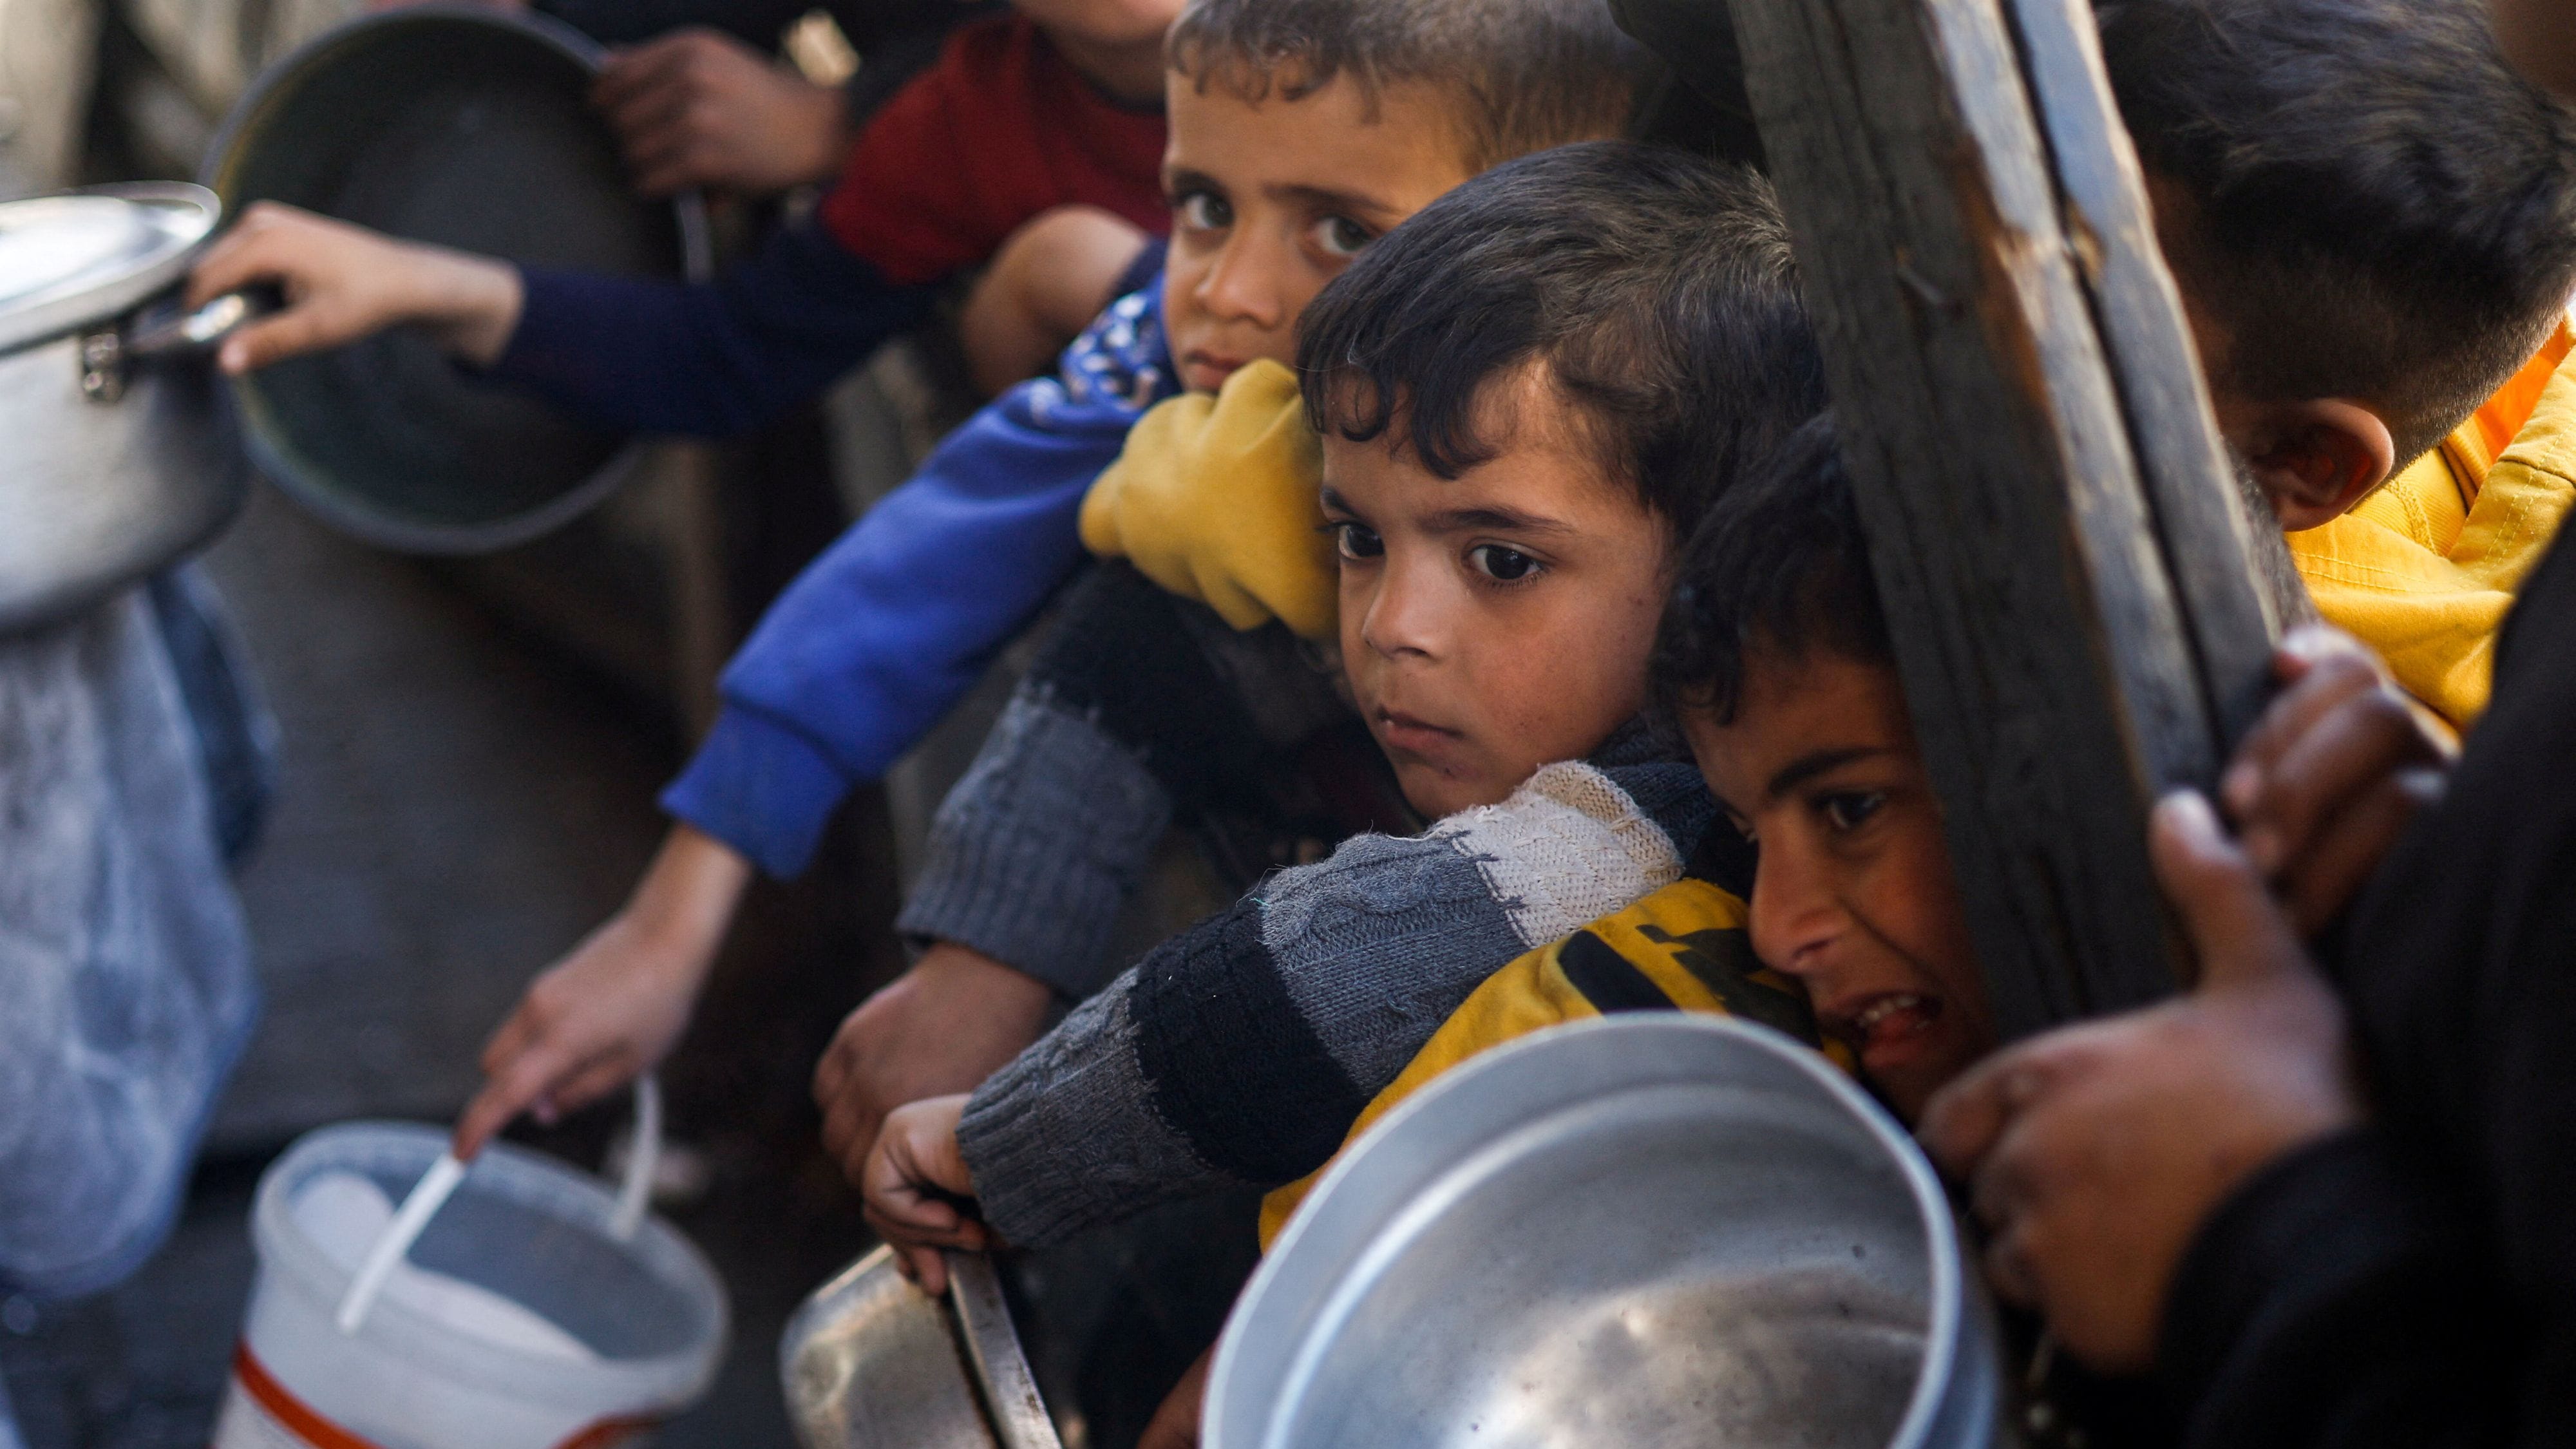 Nahost-Krieg | Israel kritisiert UN-Bericht zu Hungersnot massiv